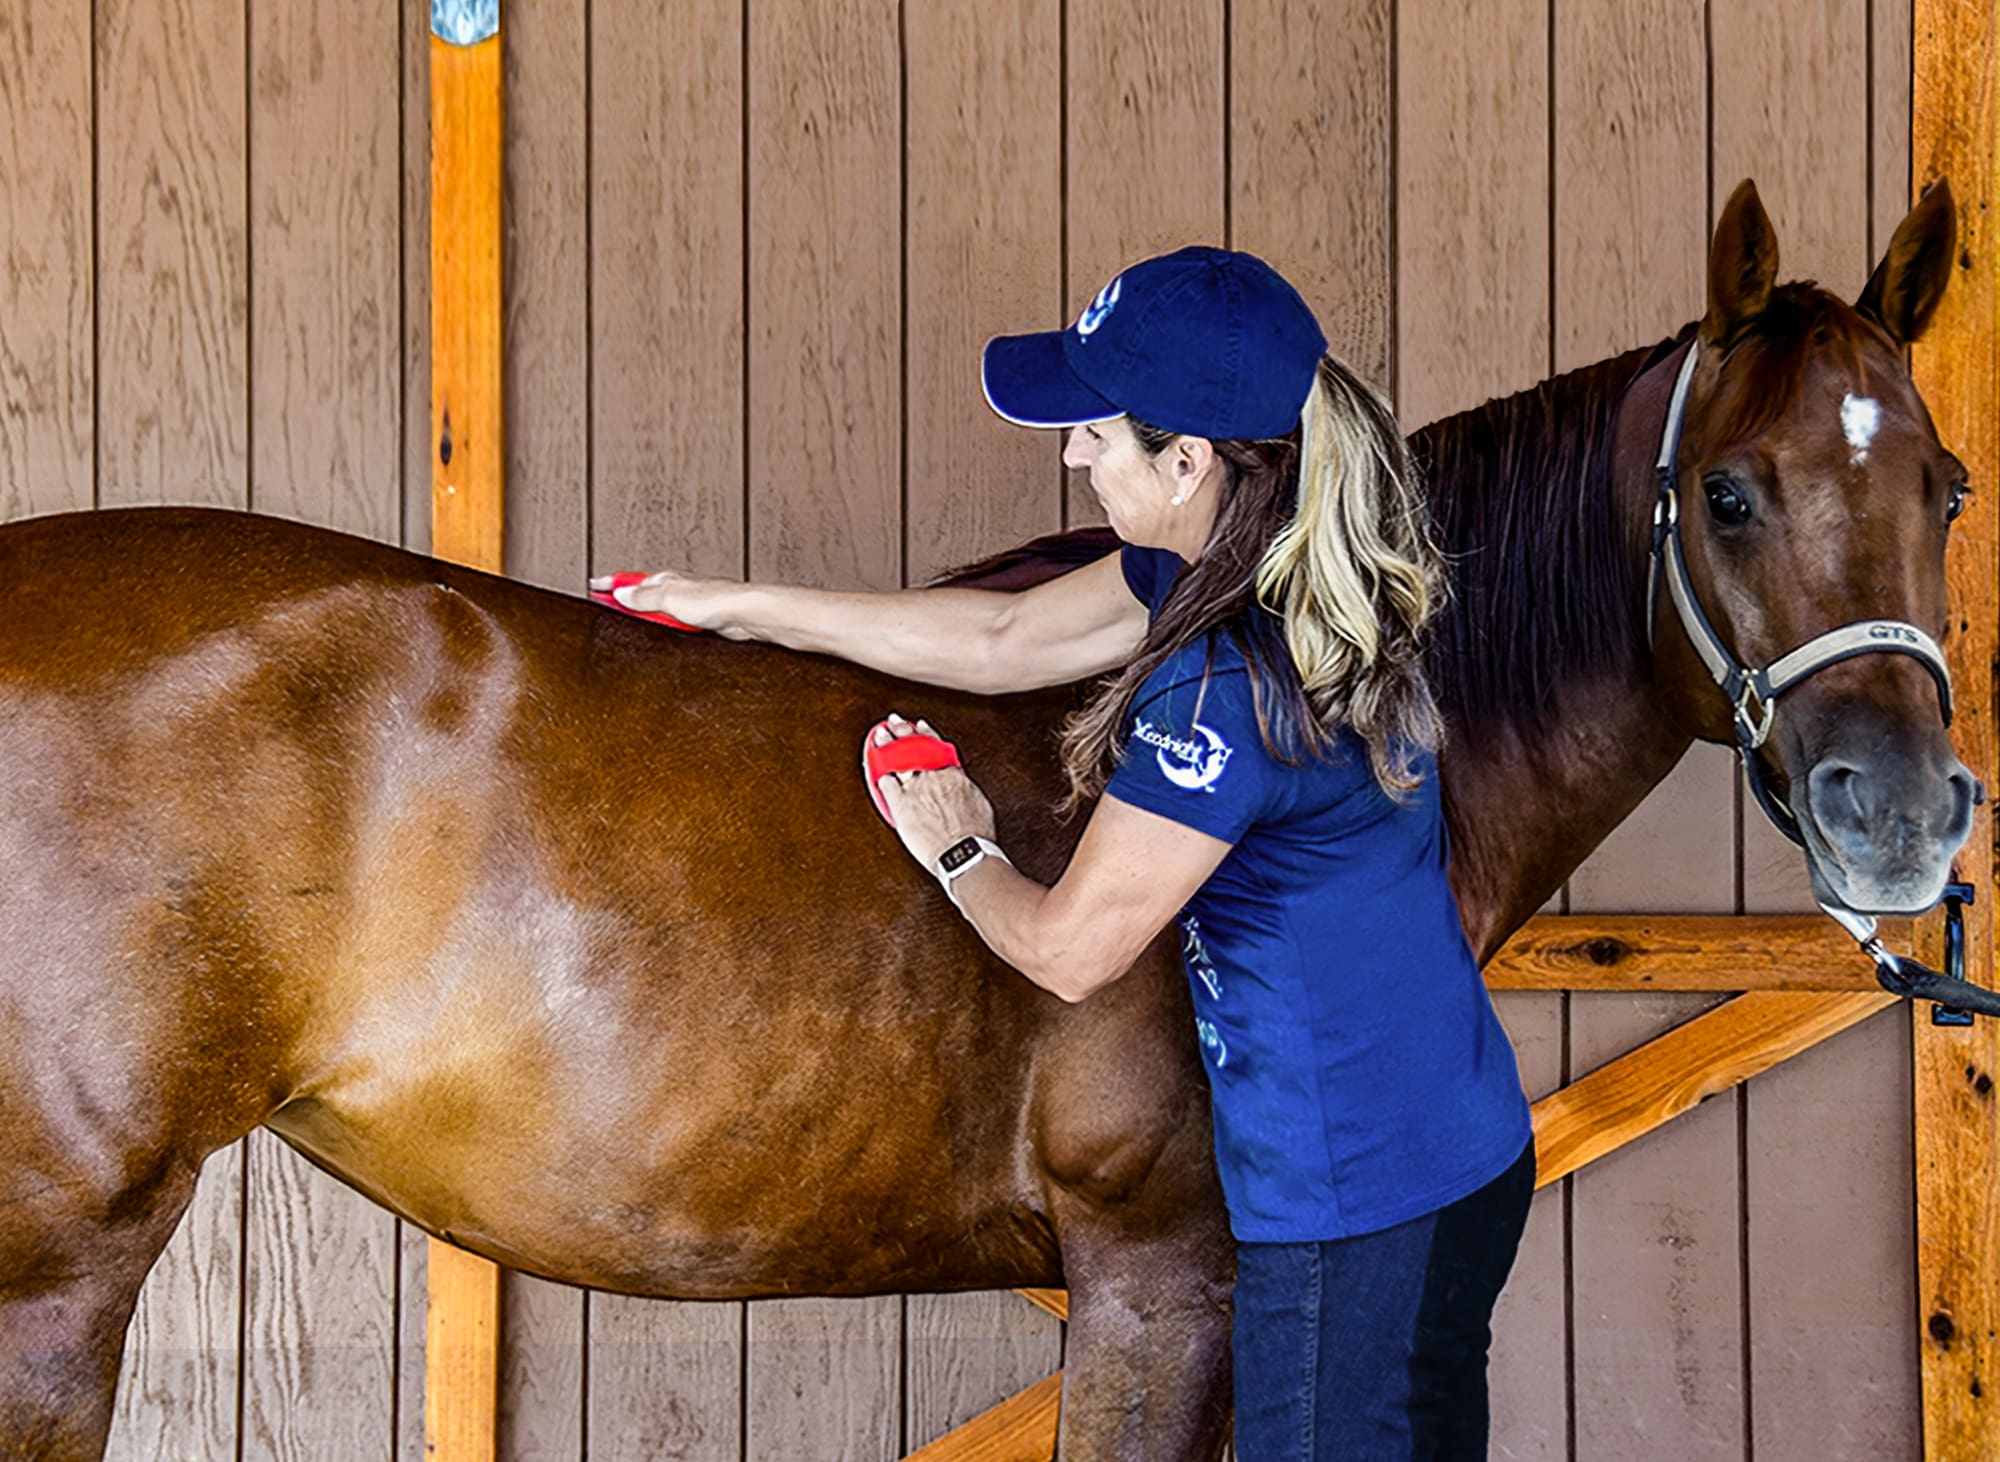 Julie grooming her horse, Annie.